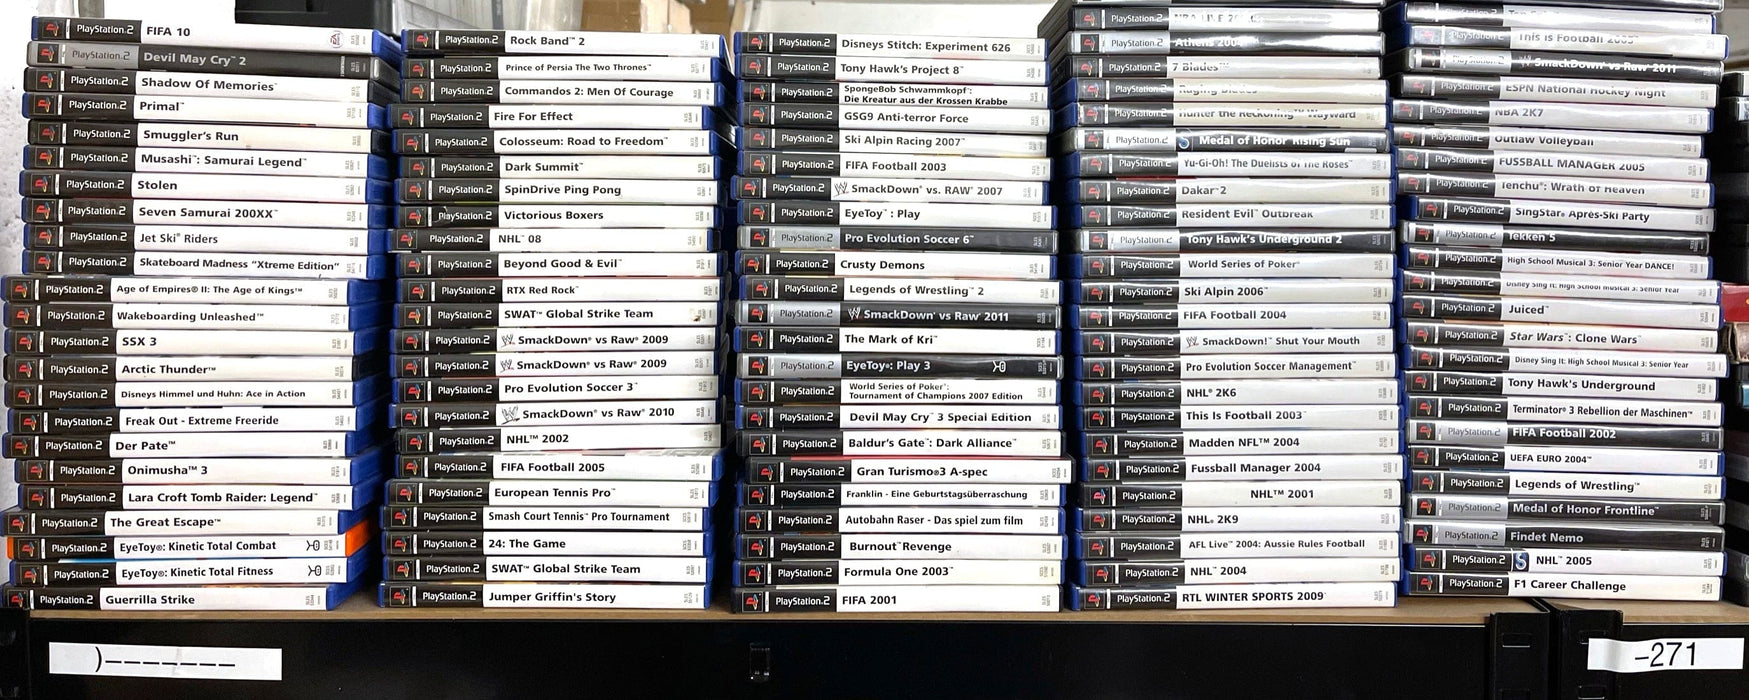 Glaciergames PlayStation 2 Game Pro Evolution Soccer Management PlayStation 2 (Nr.217)